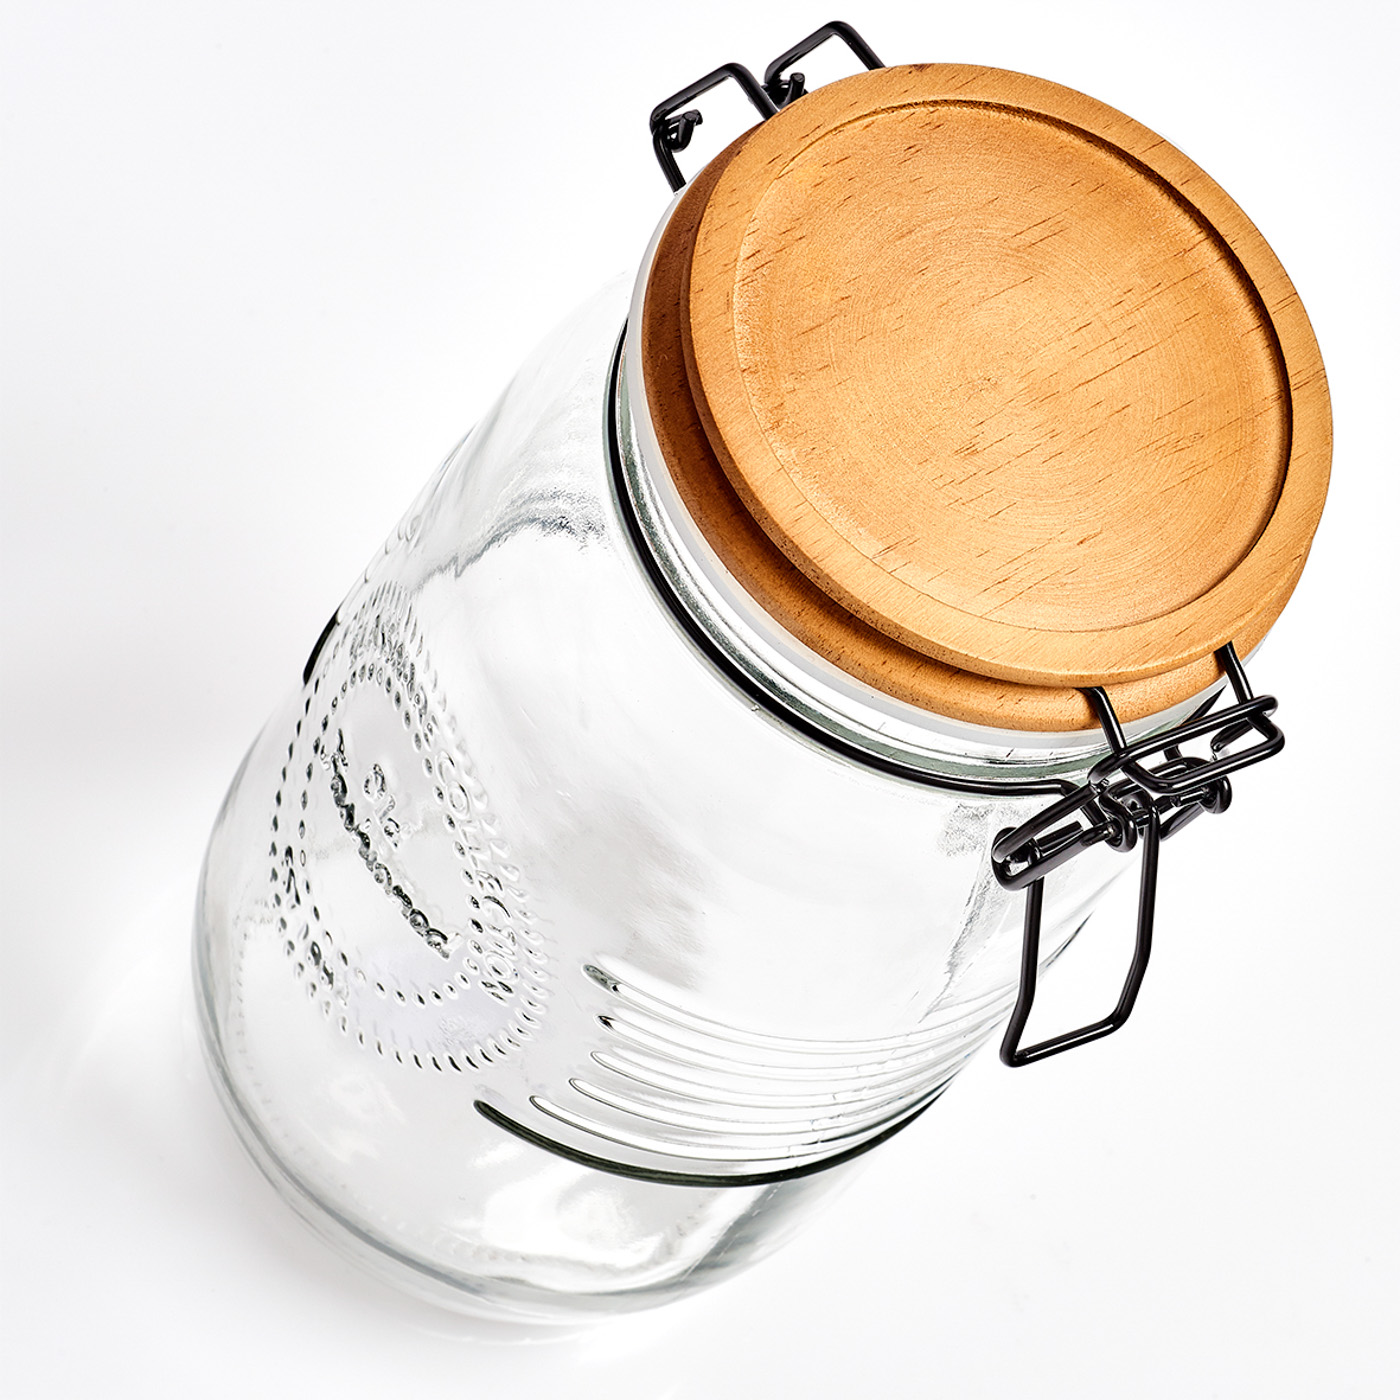 Vorratsglas, Glas; Metall; Holz, Ø10,8x22 cm. Farbe: transparent. Fassungsvermögen: 1450 ml. Die trockene Lagerung von Lebensmitteln ist nicht